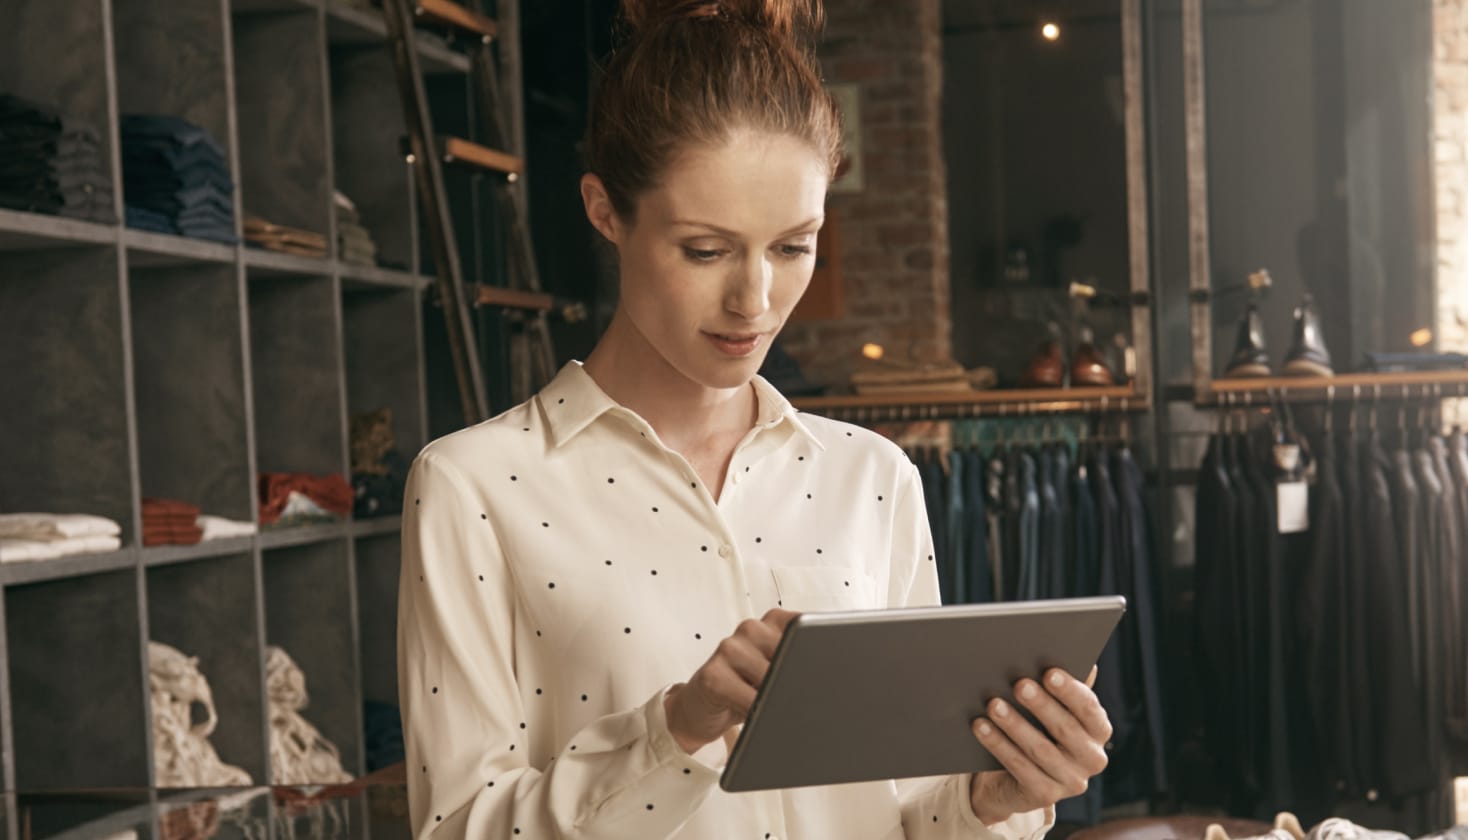 Osoba w sklepie odzieżowym, patrząca na tablet, przypuszczalnie czytająca opinie z ankiet dla klientów